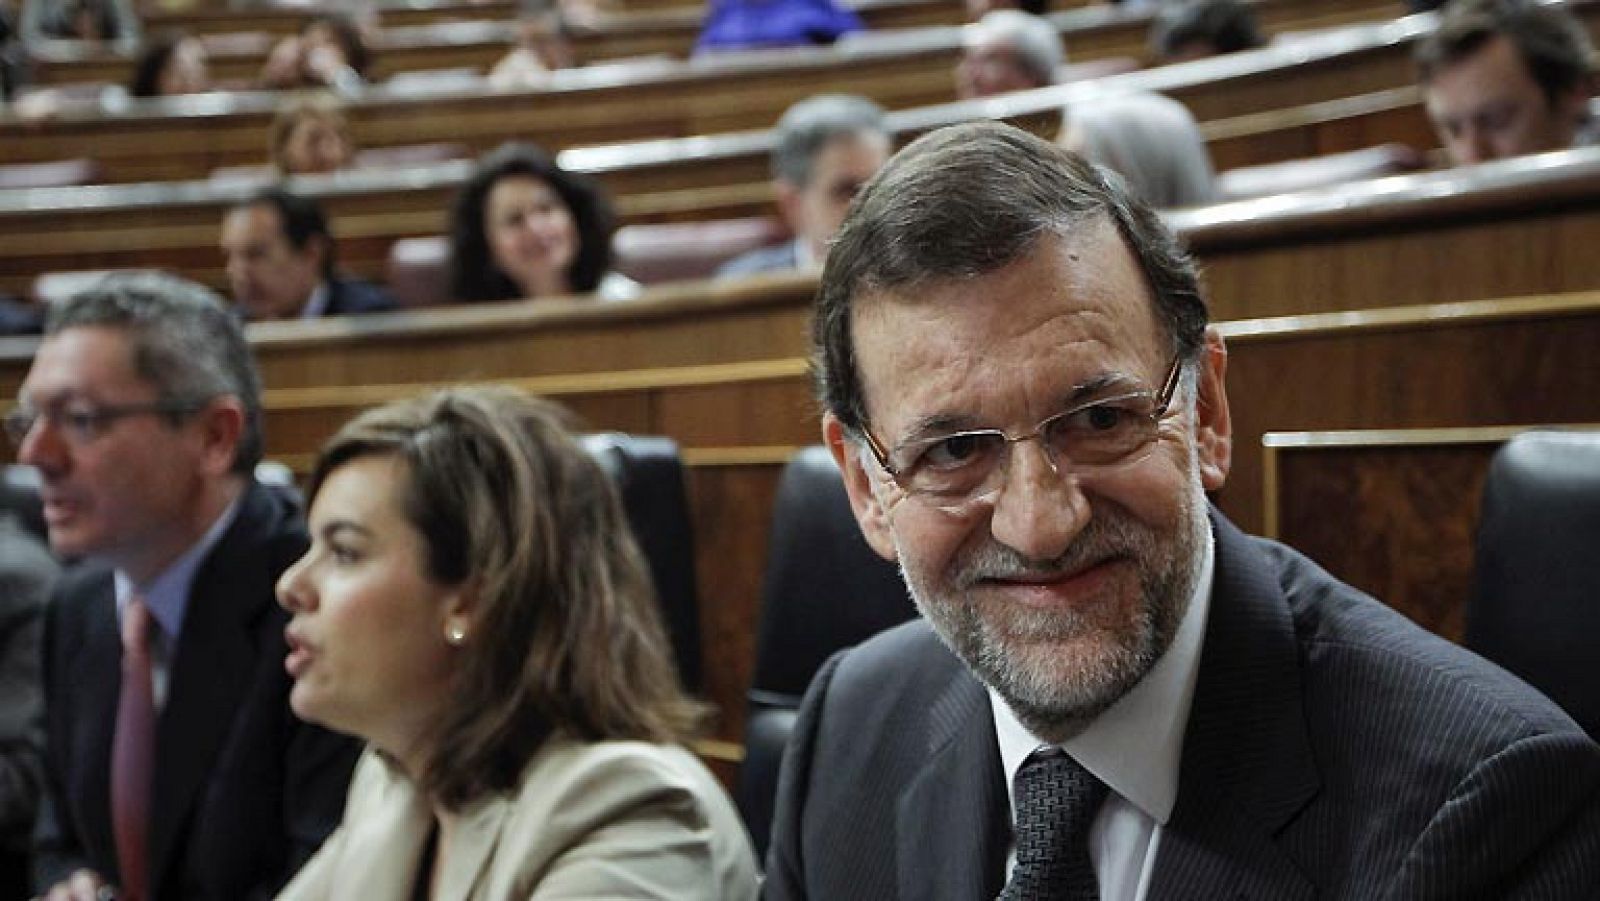 El presidente del Gobierno, Mariano Rajoy, ha defendido las reuniones mantenidas en secreto con algunos presidentes autonómicos como el de Cataluña, Artur Mas, y el del País Vasco, Iñigo Urkullu, porque, a su juicio, es bueno mantener encuentros con "sosiego, tranquilidad y discreción" alejados del "exhibicionismo y notoriedad". Así lo ha dicho ante la pregunta de la líder de UPyD, Rosa Díez, quien ha pedido explicaciones al jefe del Ejecutivo por las reuniones con Mas y Urkullu y le ha reprochado una forma de gobernar "que no respeta ni a la Cámara ni a los ciudadanos".